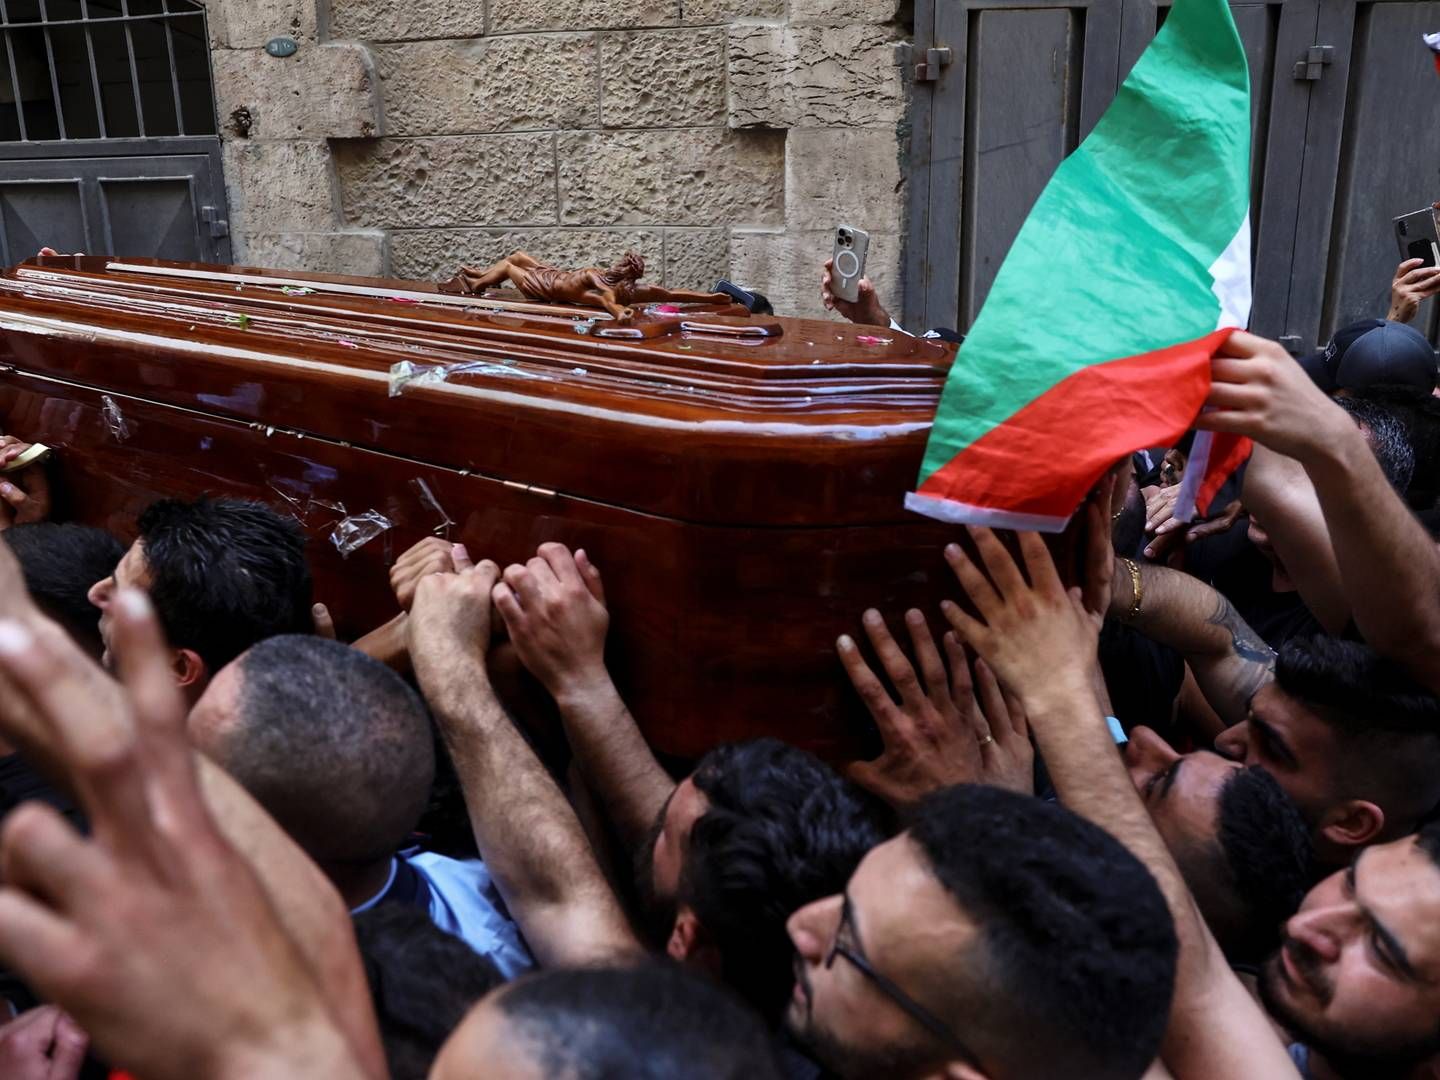 Journalisten Shireen Abu Akleh fra den arabiske tv-station al-Jazeera blev begravet i Jerusalem fredag. Tusindvis af mennesker deltog i begravelsesoptoget. | Foto: RONEN ZVULUN/REUTERS / X90084